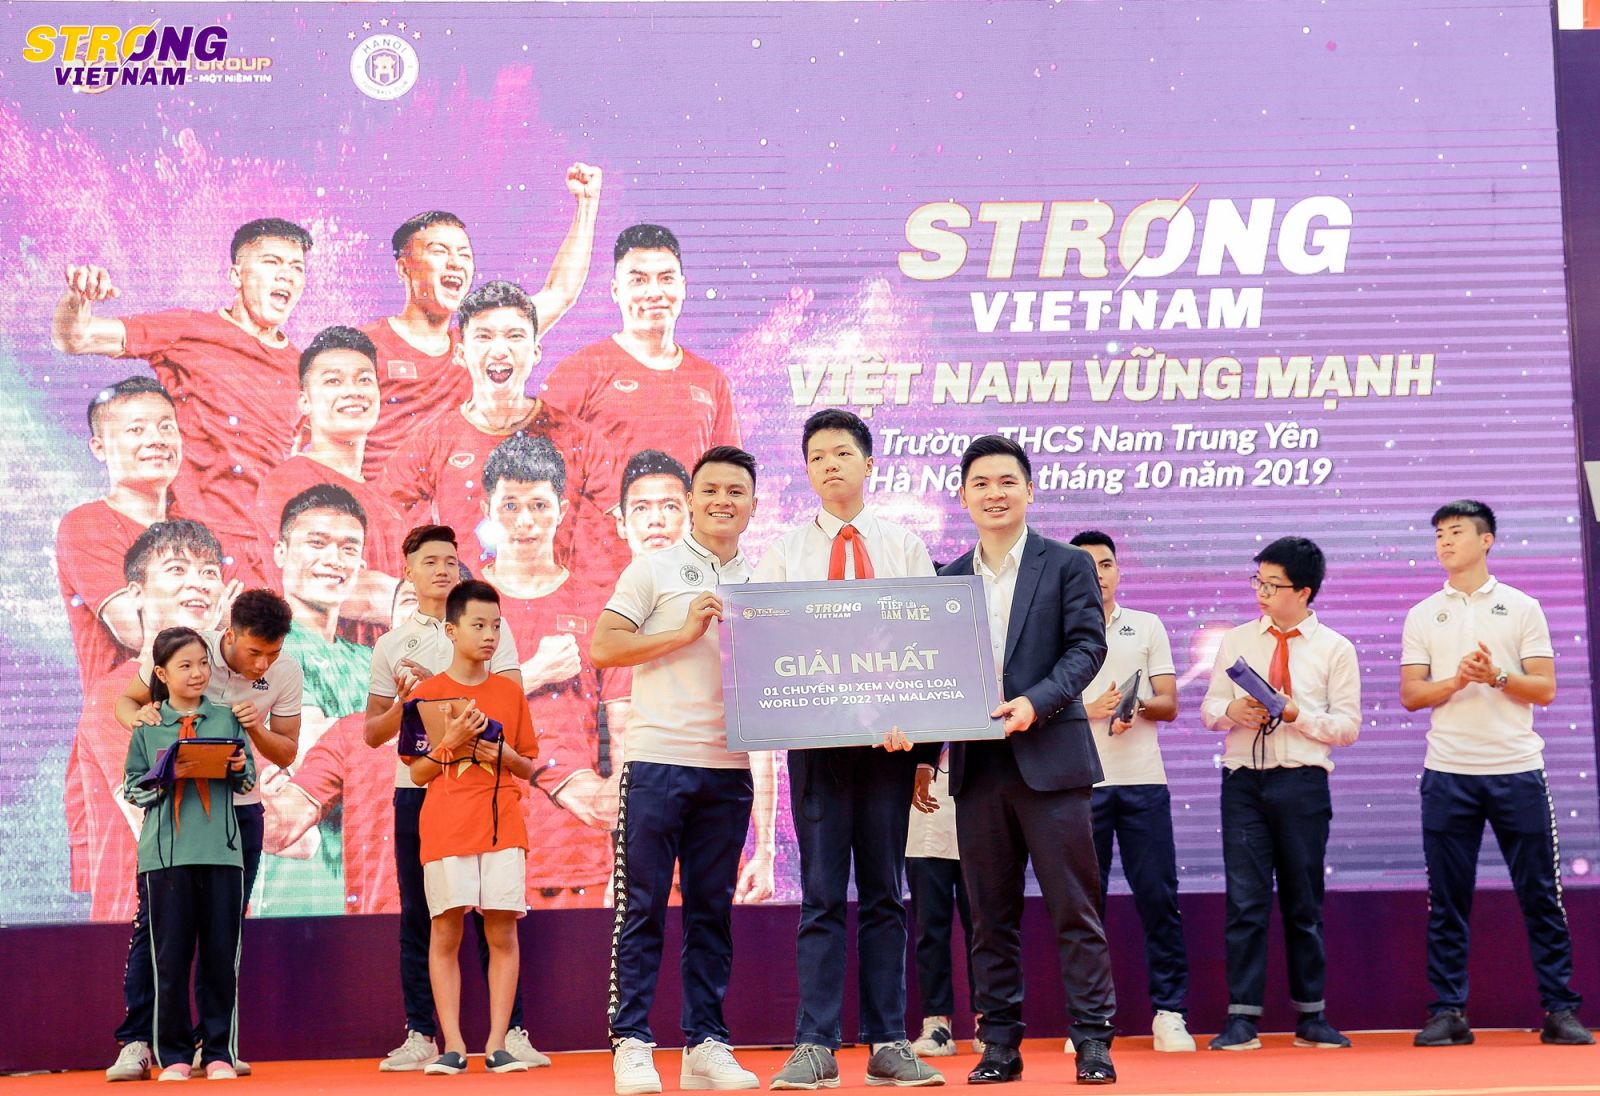 Cha con bầu Hiểu và CLB Hà Nội trao tặng các bệnh viện 4,5 tỷ đồng, nâng mức ủng hộ phòng chống Covid-19 lên trên 20 tỷ đồng